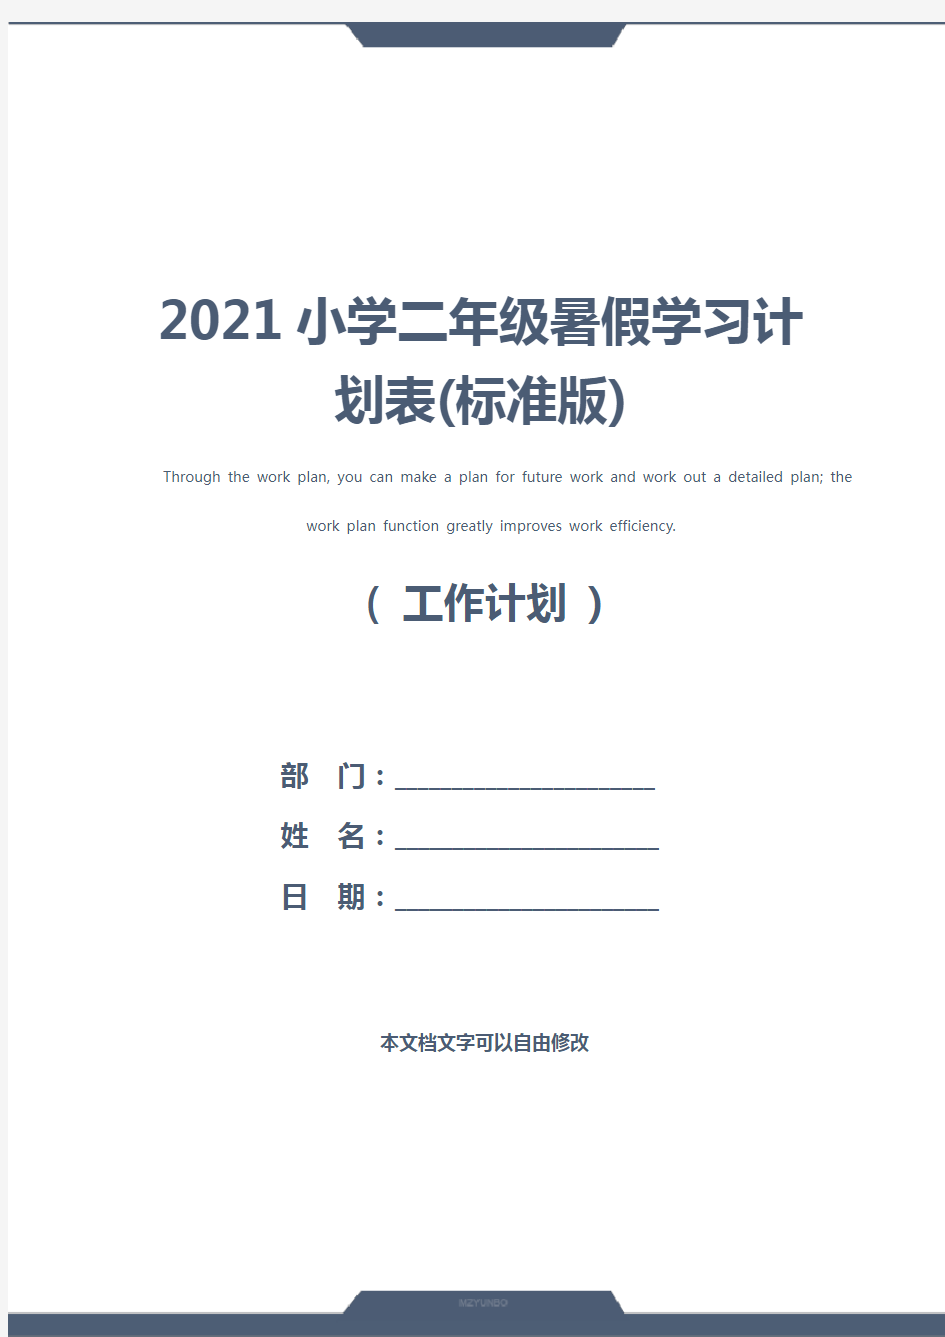 2021小学二年级暑假学习计划表(标准版)